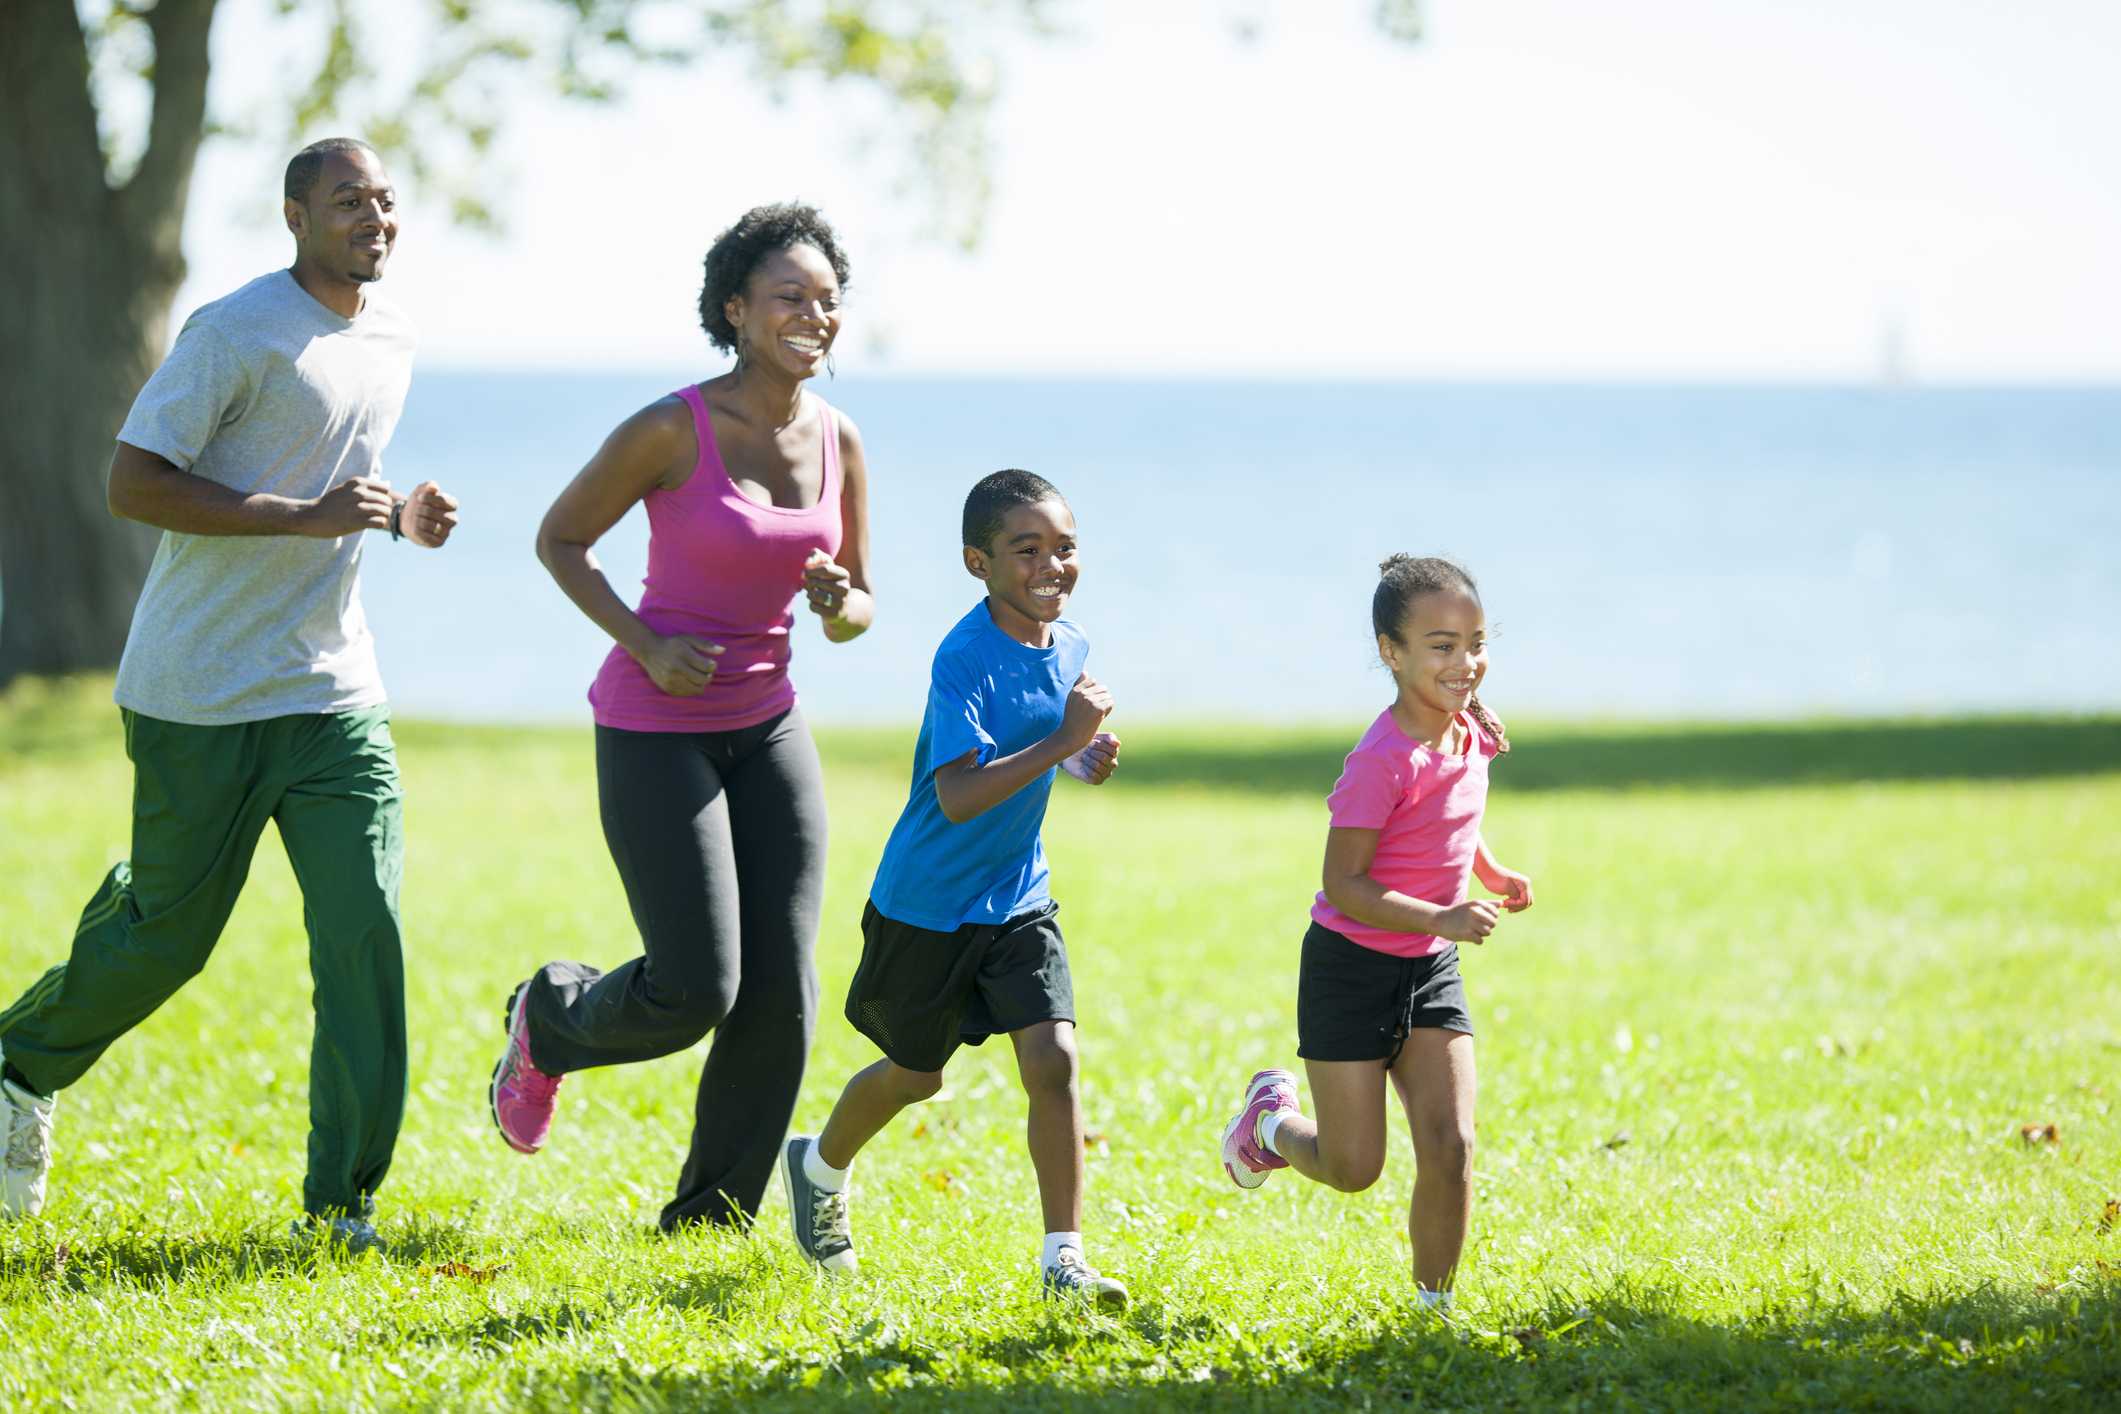 Health activities. Спортивная семья. Бег всей семьей. Семья на пробежке. Счастливая спортивная семья.